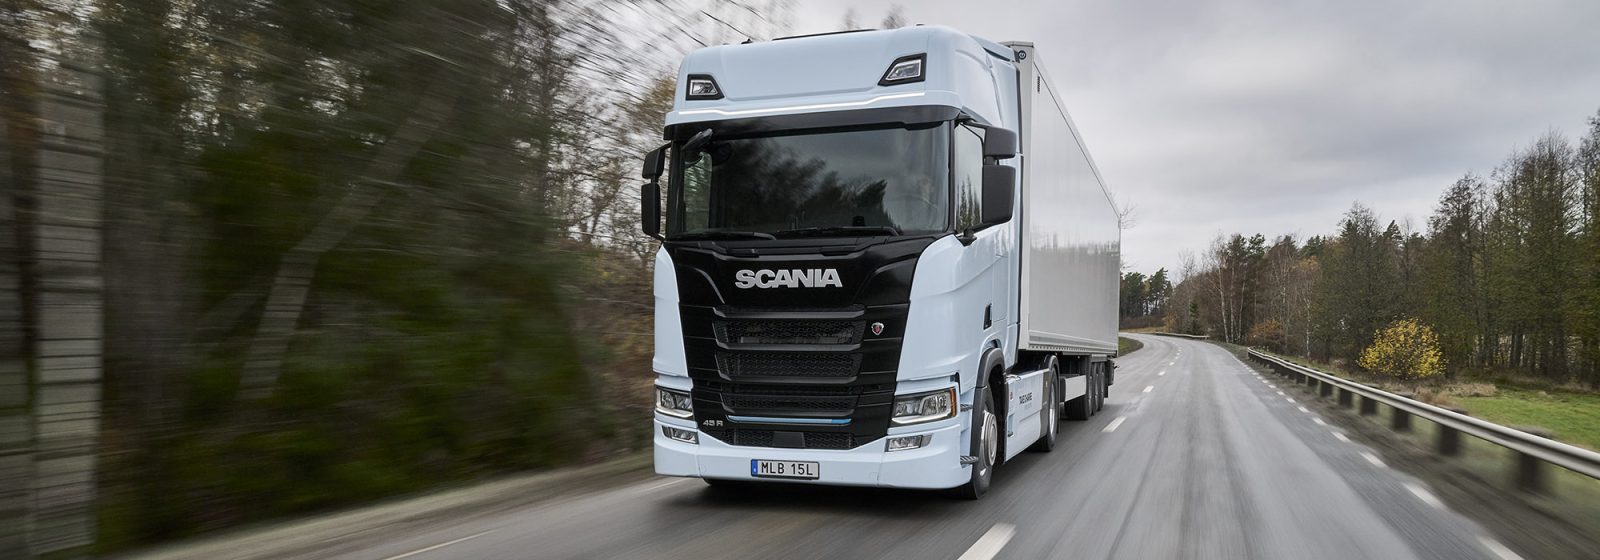 Scania-vrachtwagen